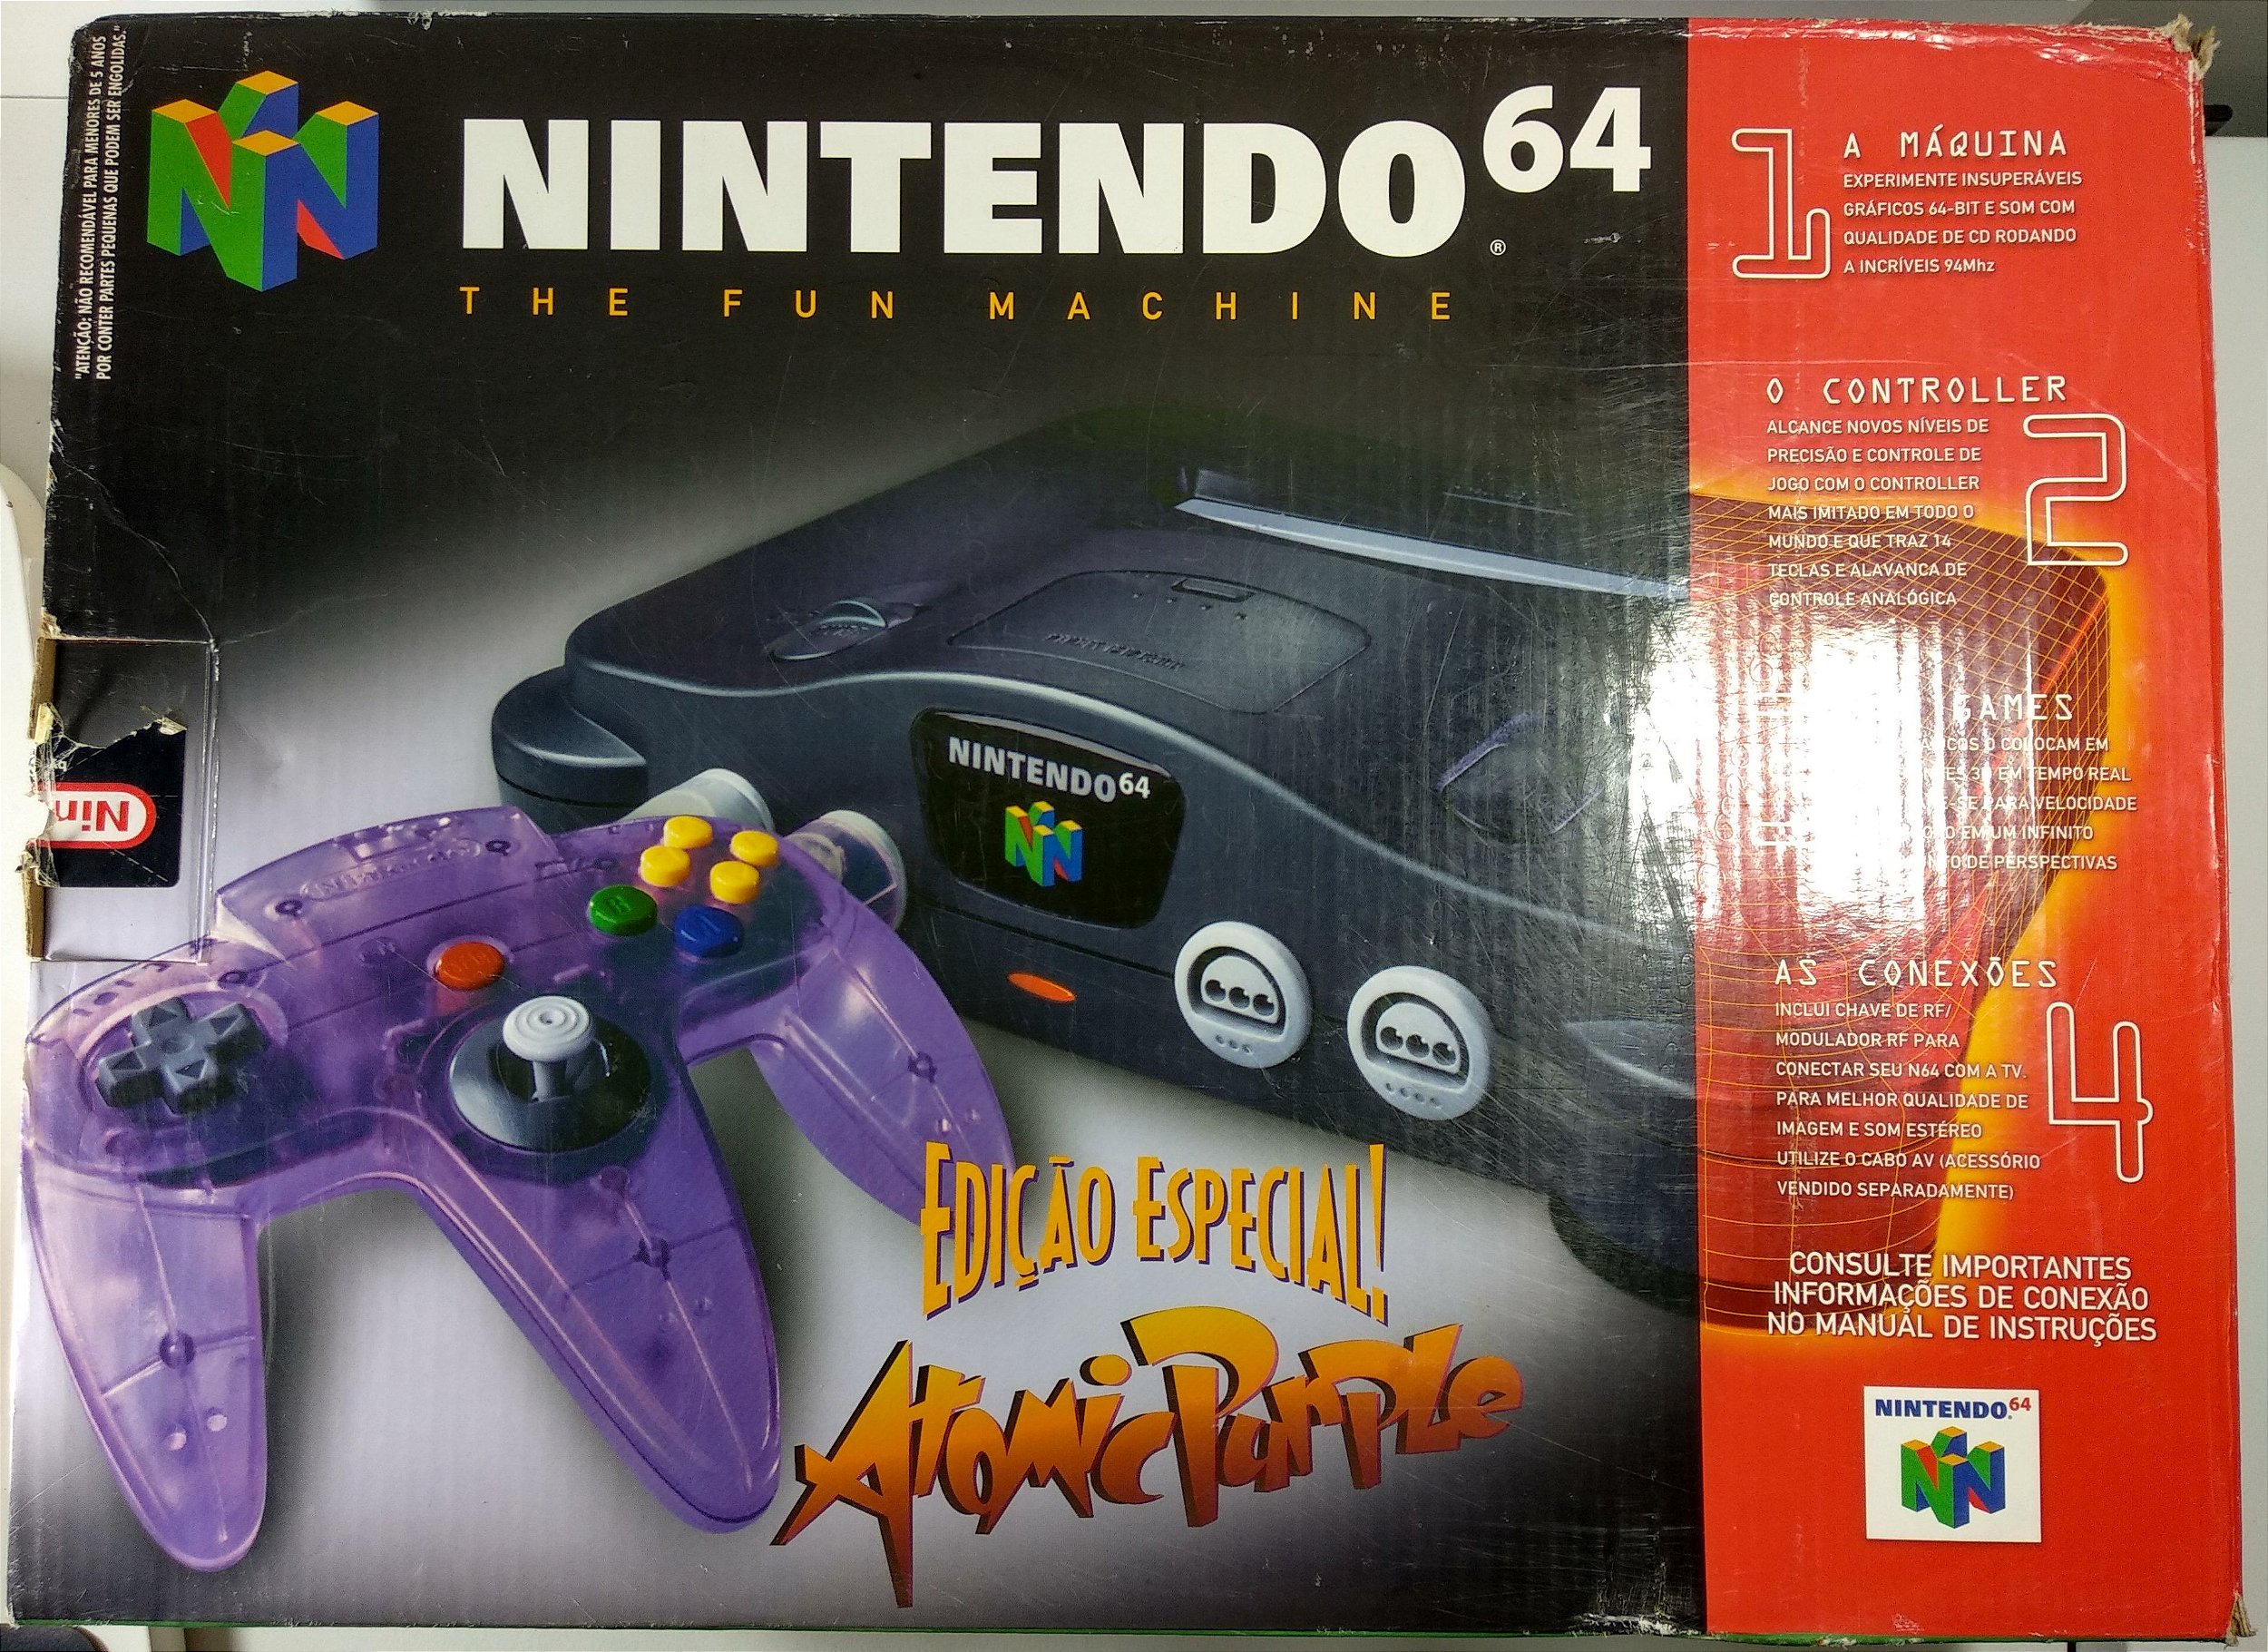 Nintendo 64 Edição Especial Atomic Purple - Sebo dos Games - 10 anos!